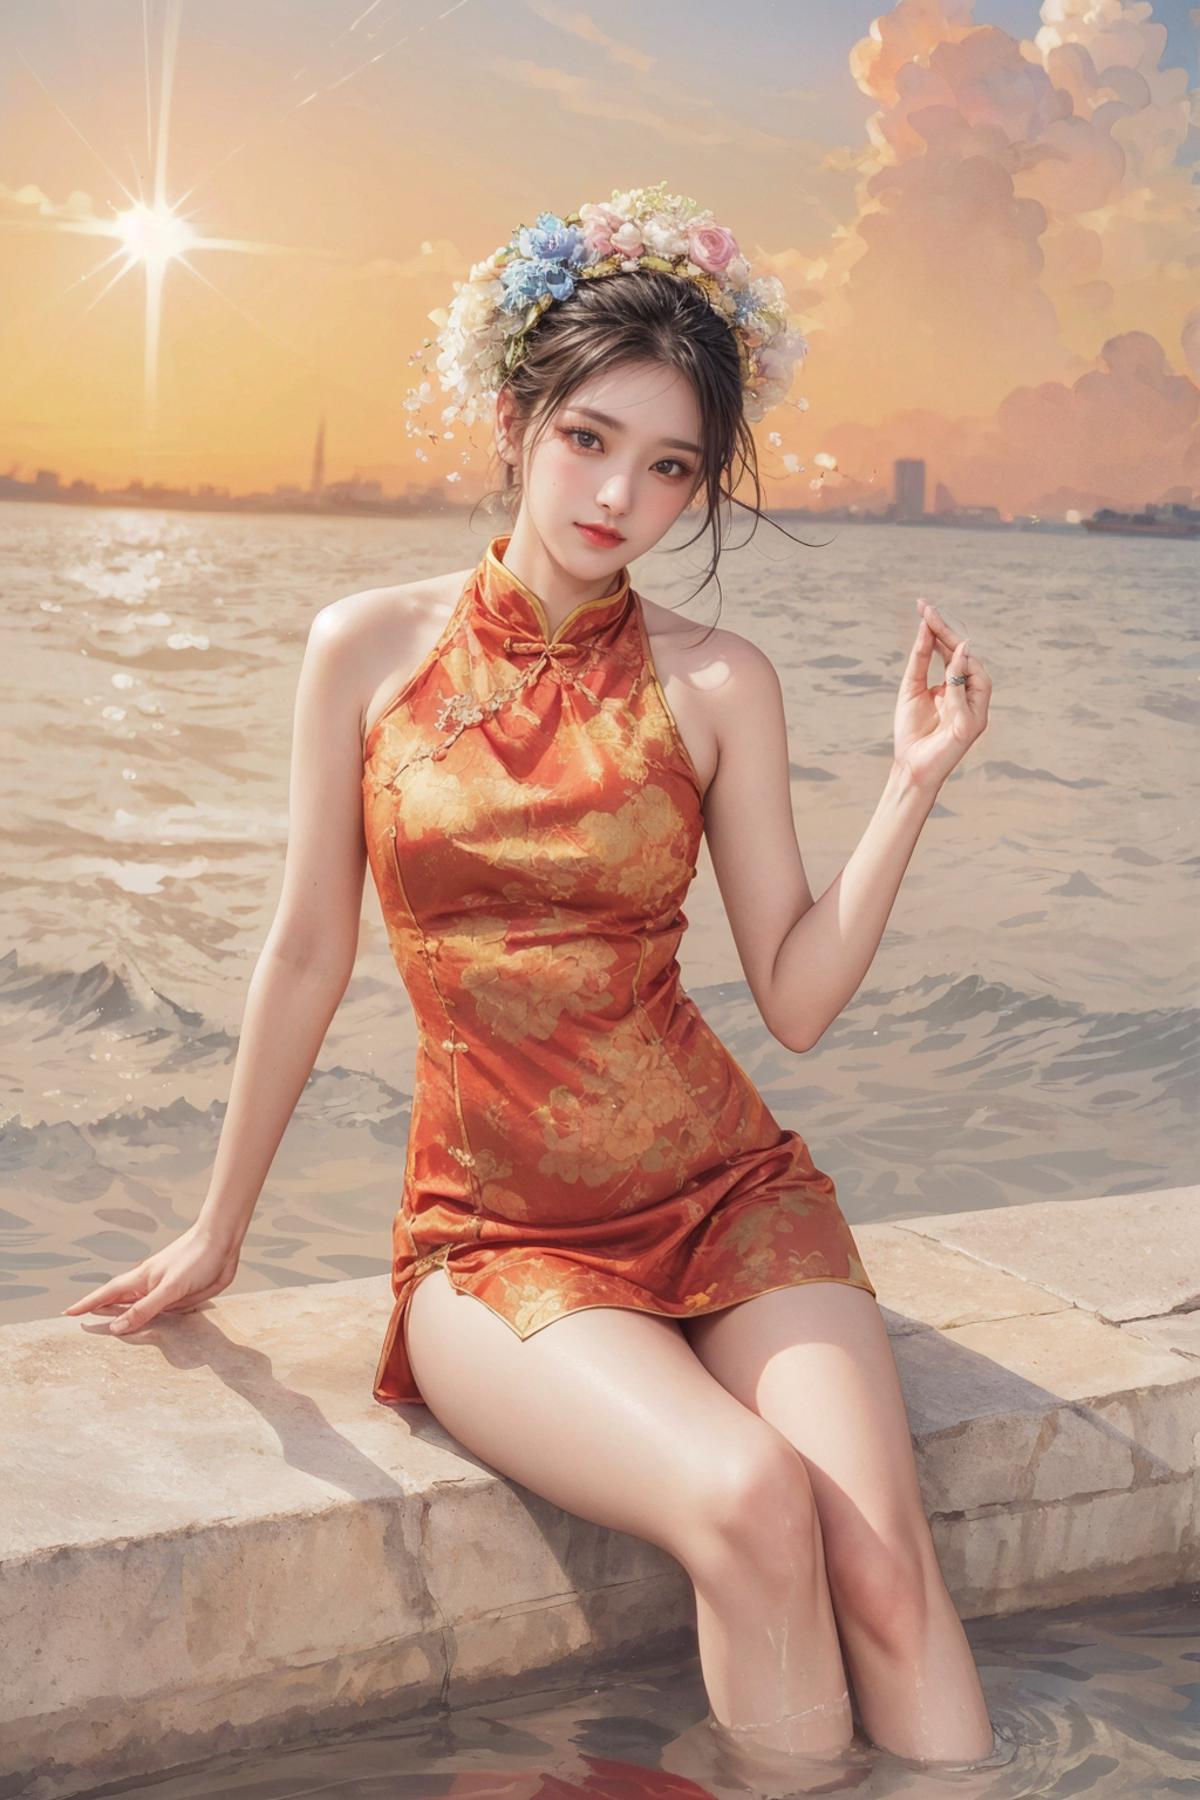 浔埔女-簪花围头饰 | Xunpu-Hairpin flowers | Chinese traditional clothing image by yoyochen2023